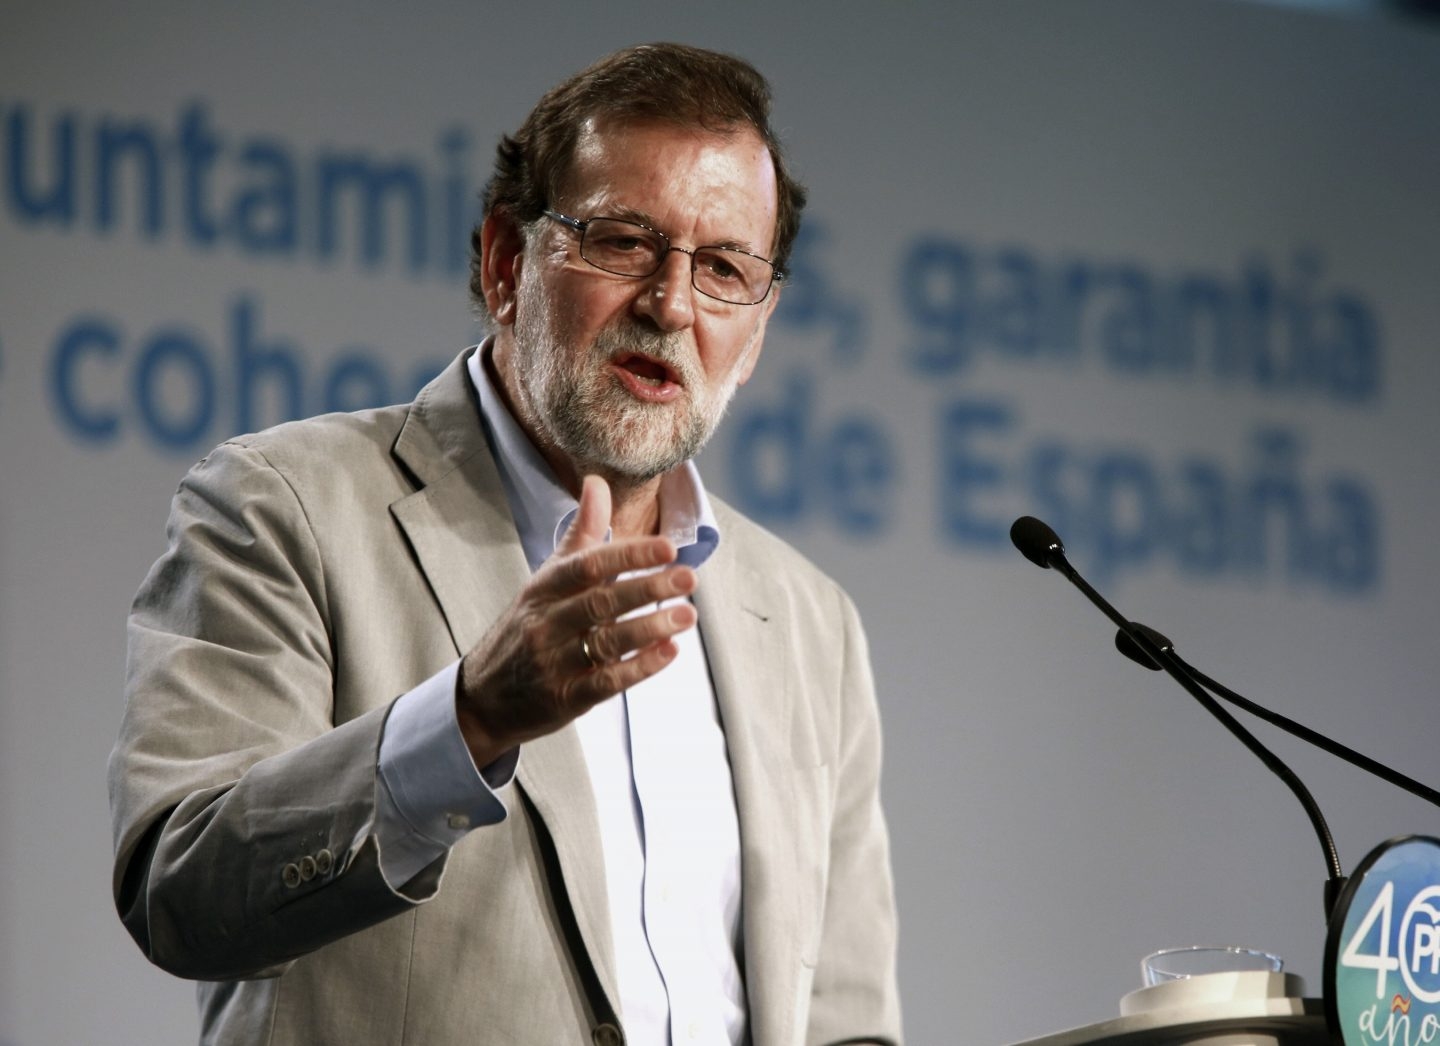 El presidente del Gobierno, Mariano Rajoy, asegura que "Europa no da crédito" con los pasos dados por los independentistas.